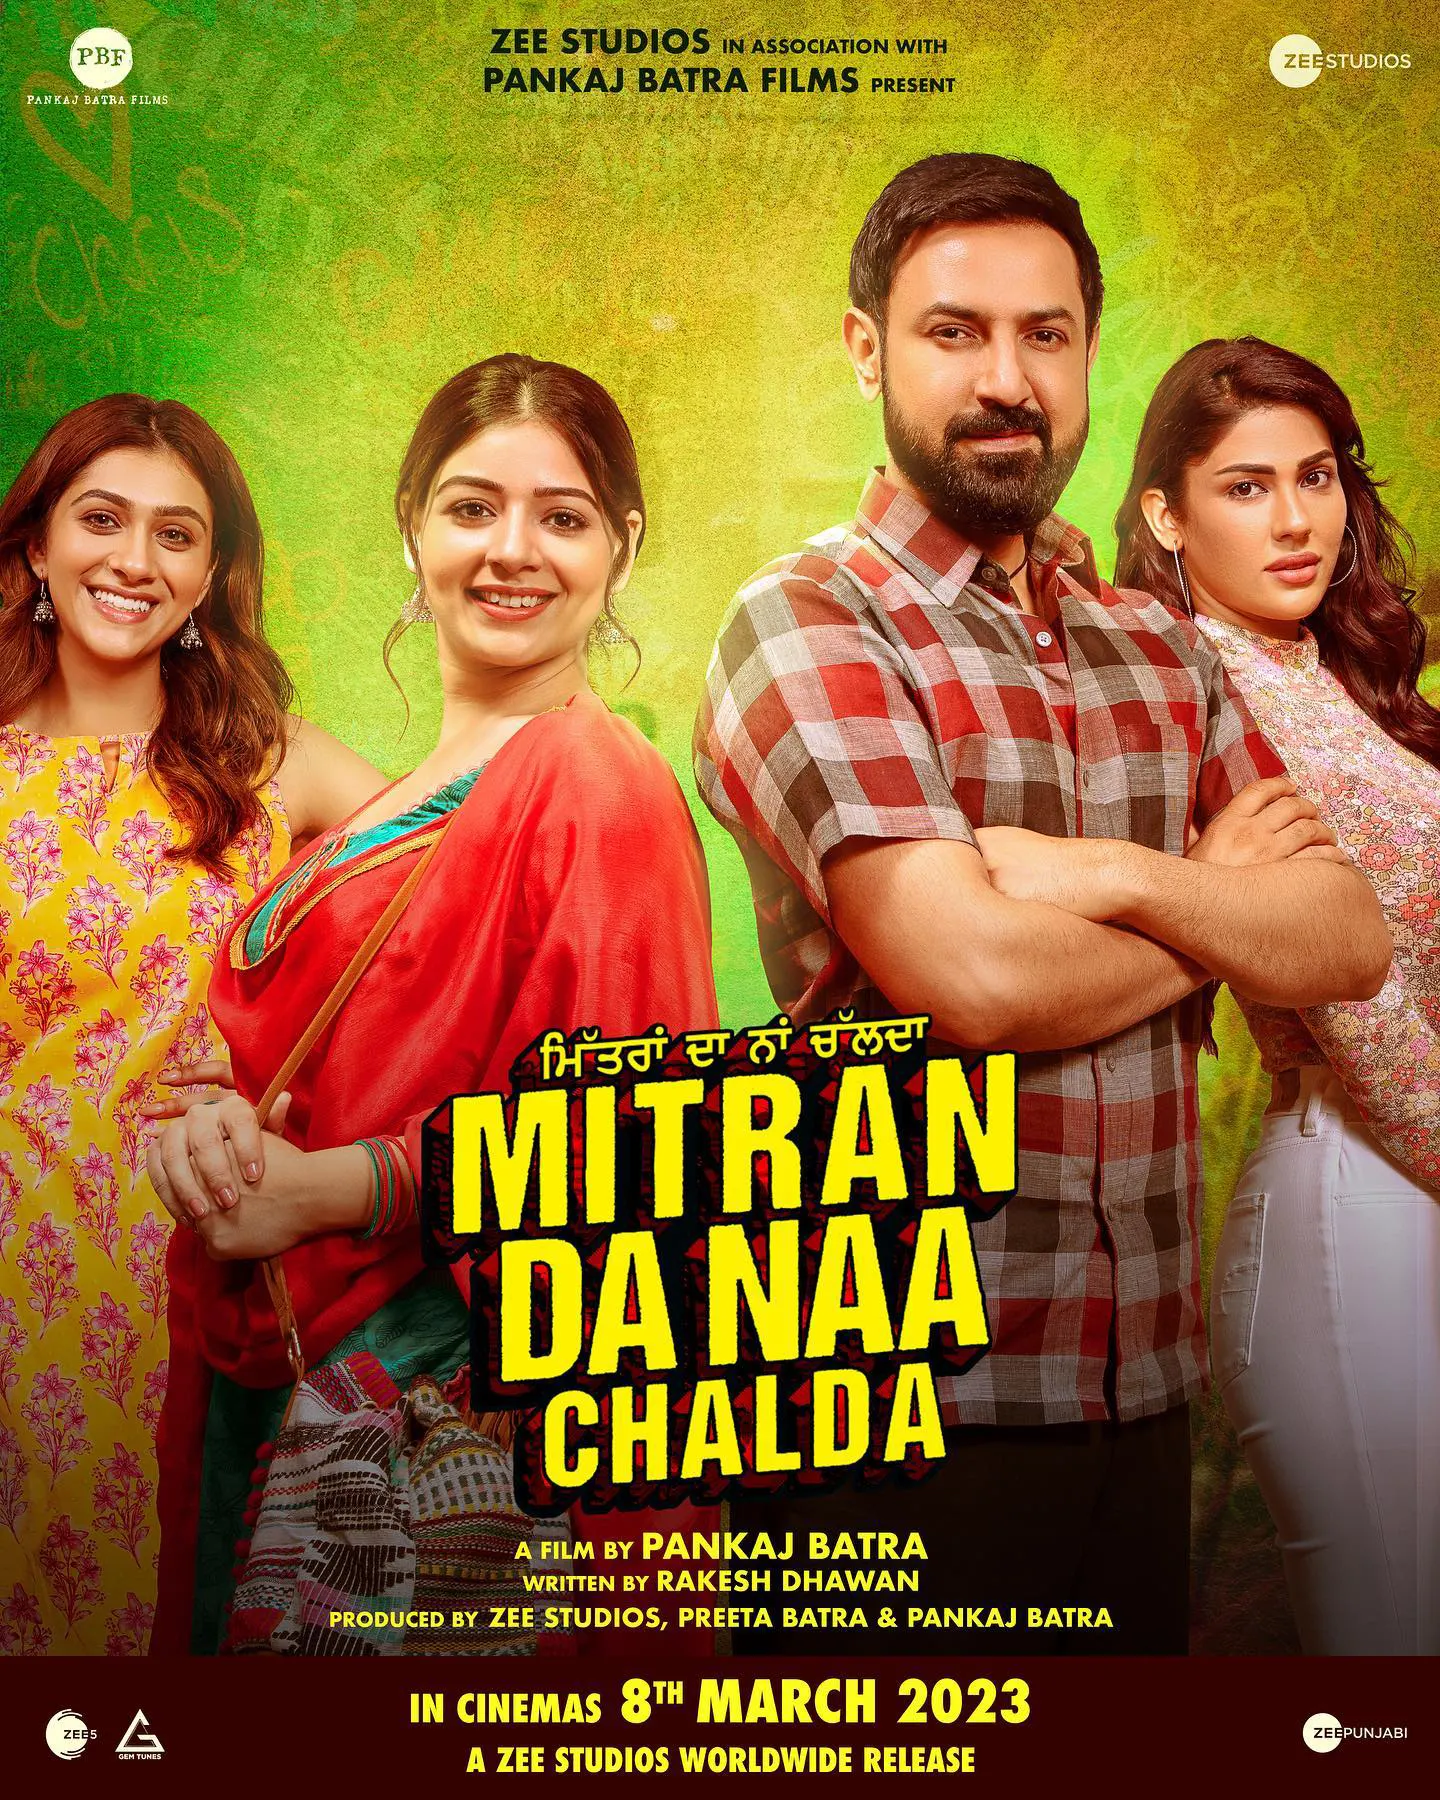 Mitran Da Naa Chalda movie cast